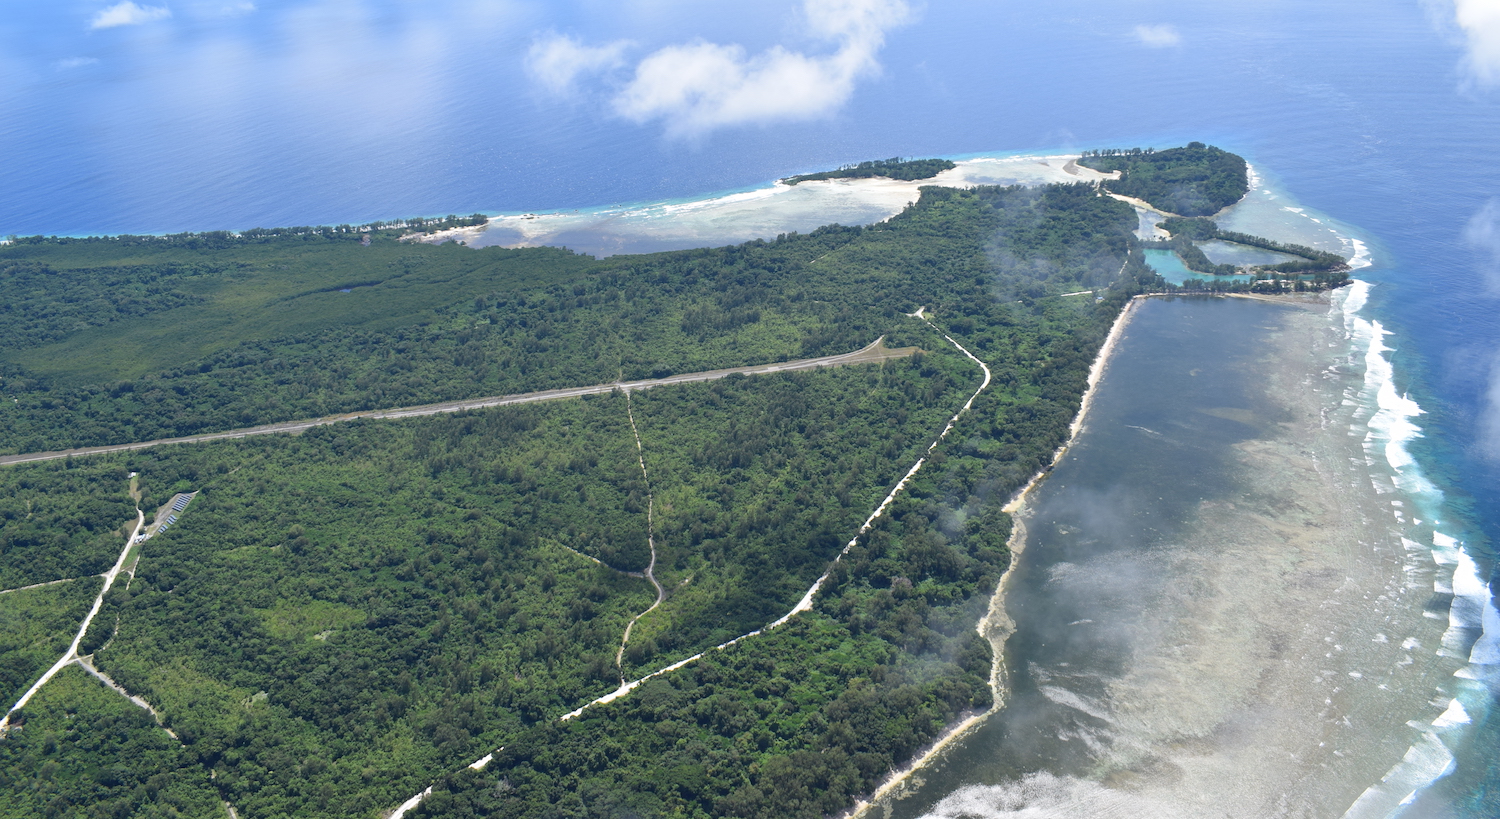 Aerial view of Peleliu battlefield in Palau